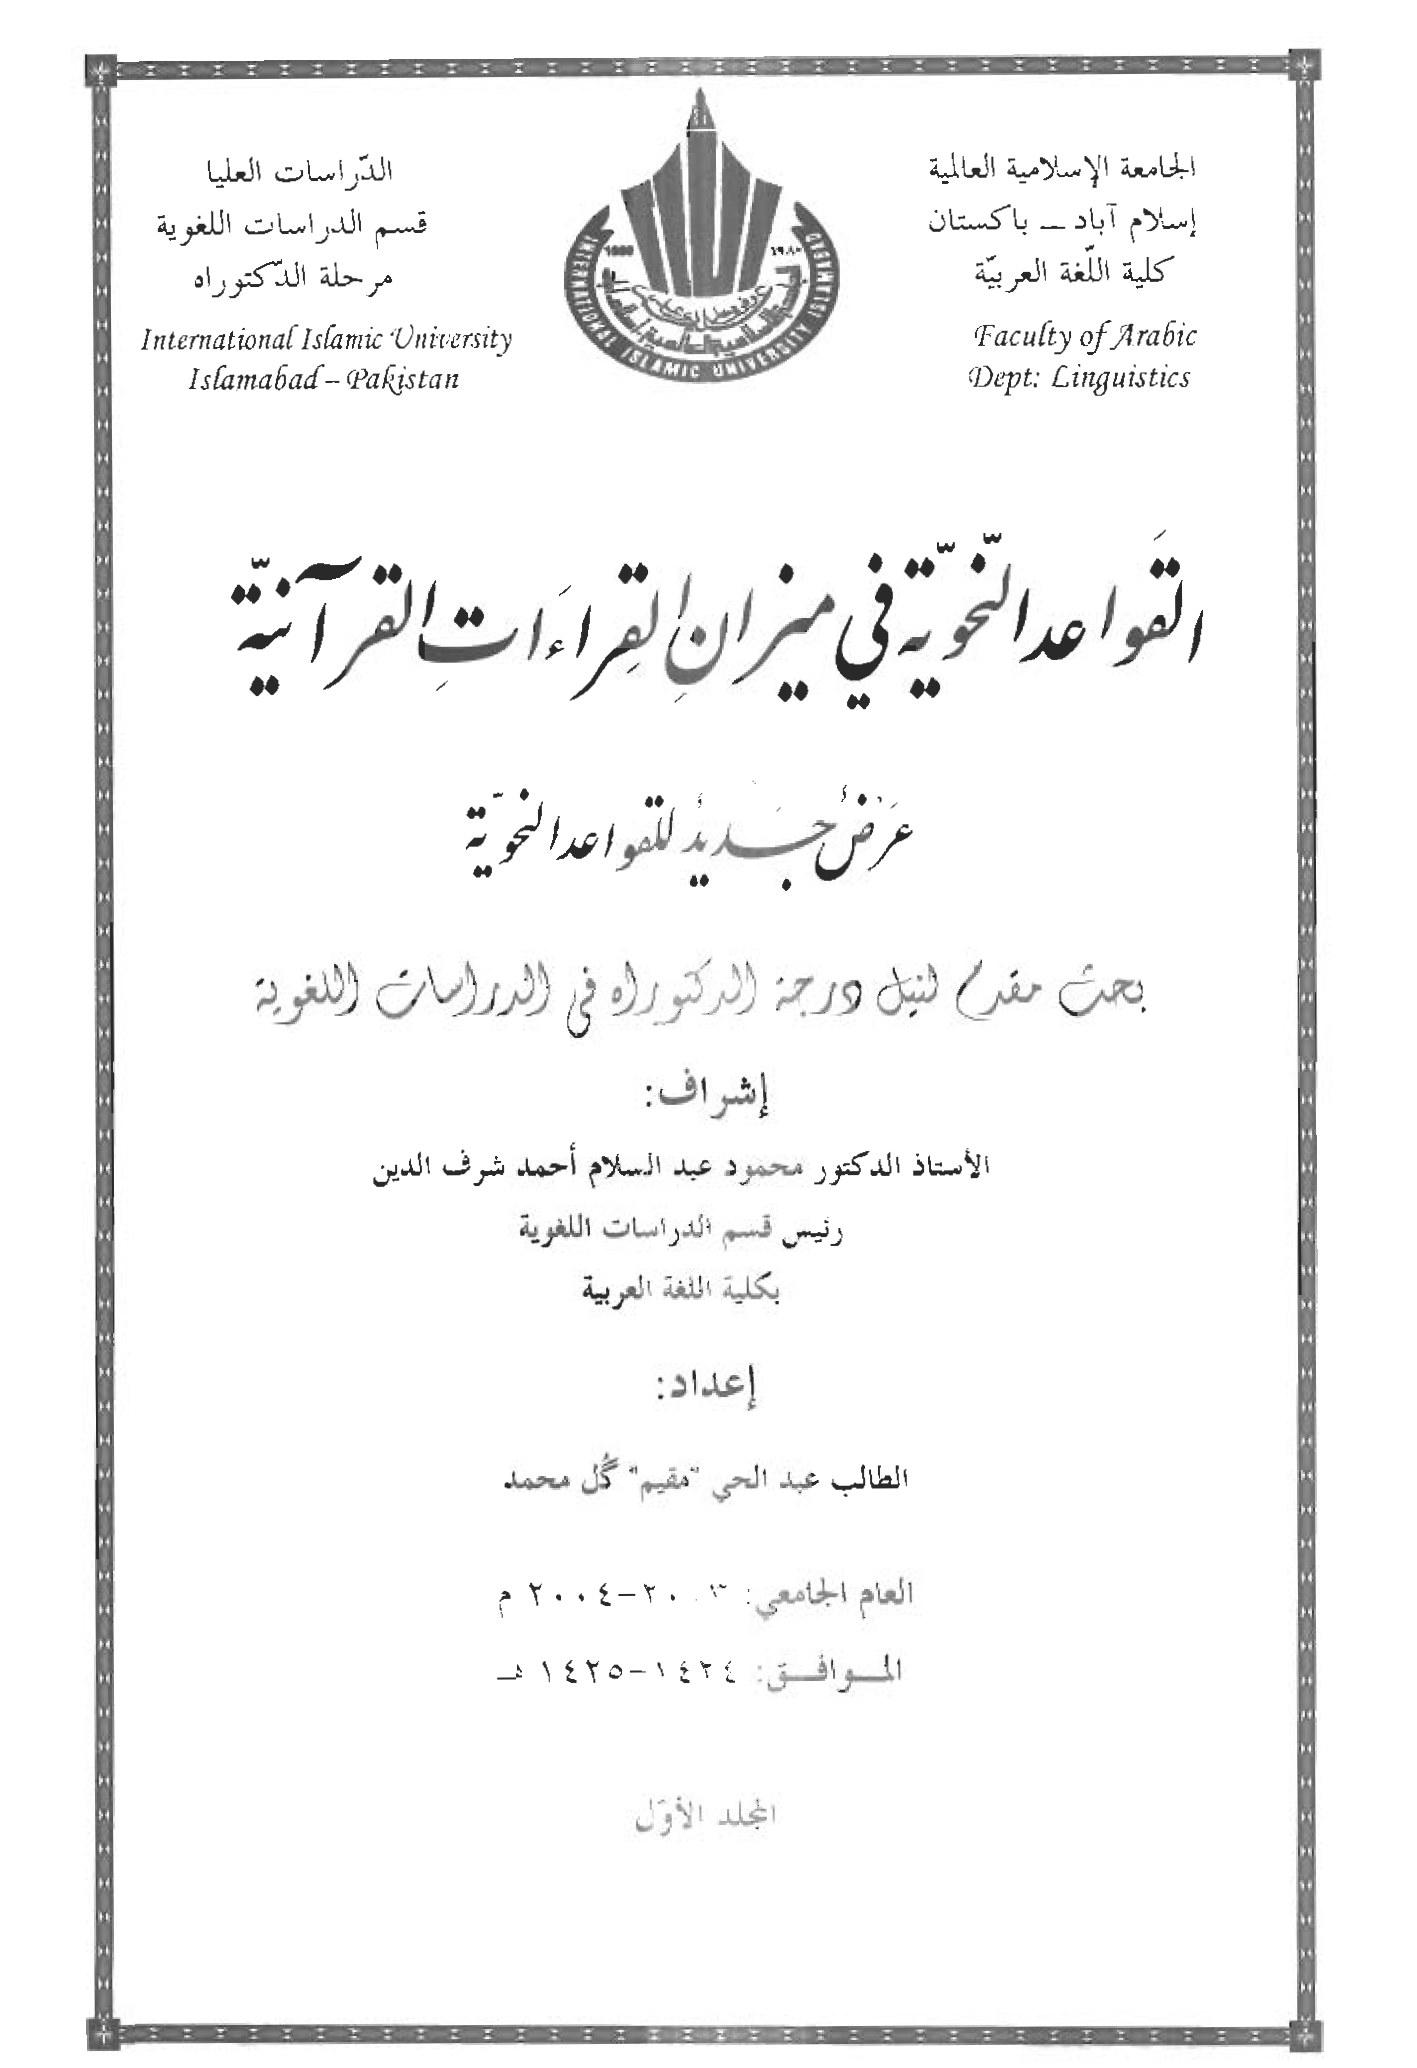 القواعد النحوية في ميزان القراءات القرآنية - عرض جديد للقواعد النحوية